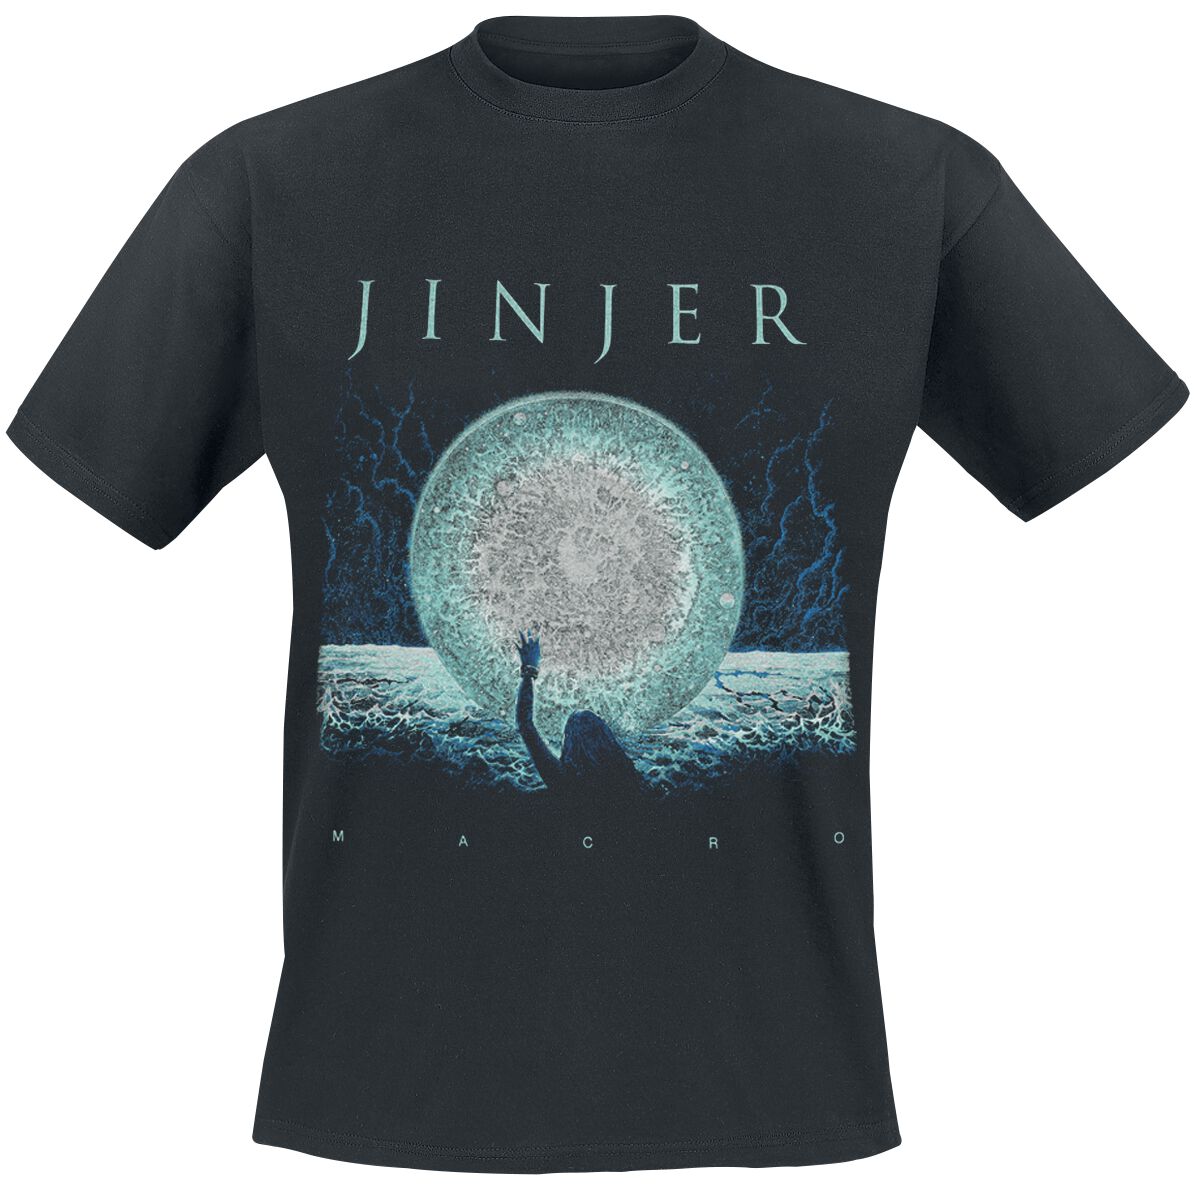 Jinjer T-Shirt - Macro - S bis 3XL - für Männer - Größe XXL - schwarz  - Lizenziertes Merchandise!